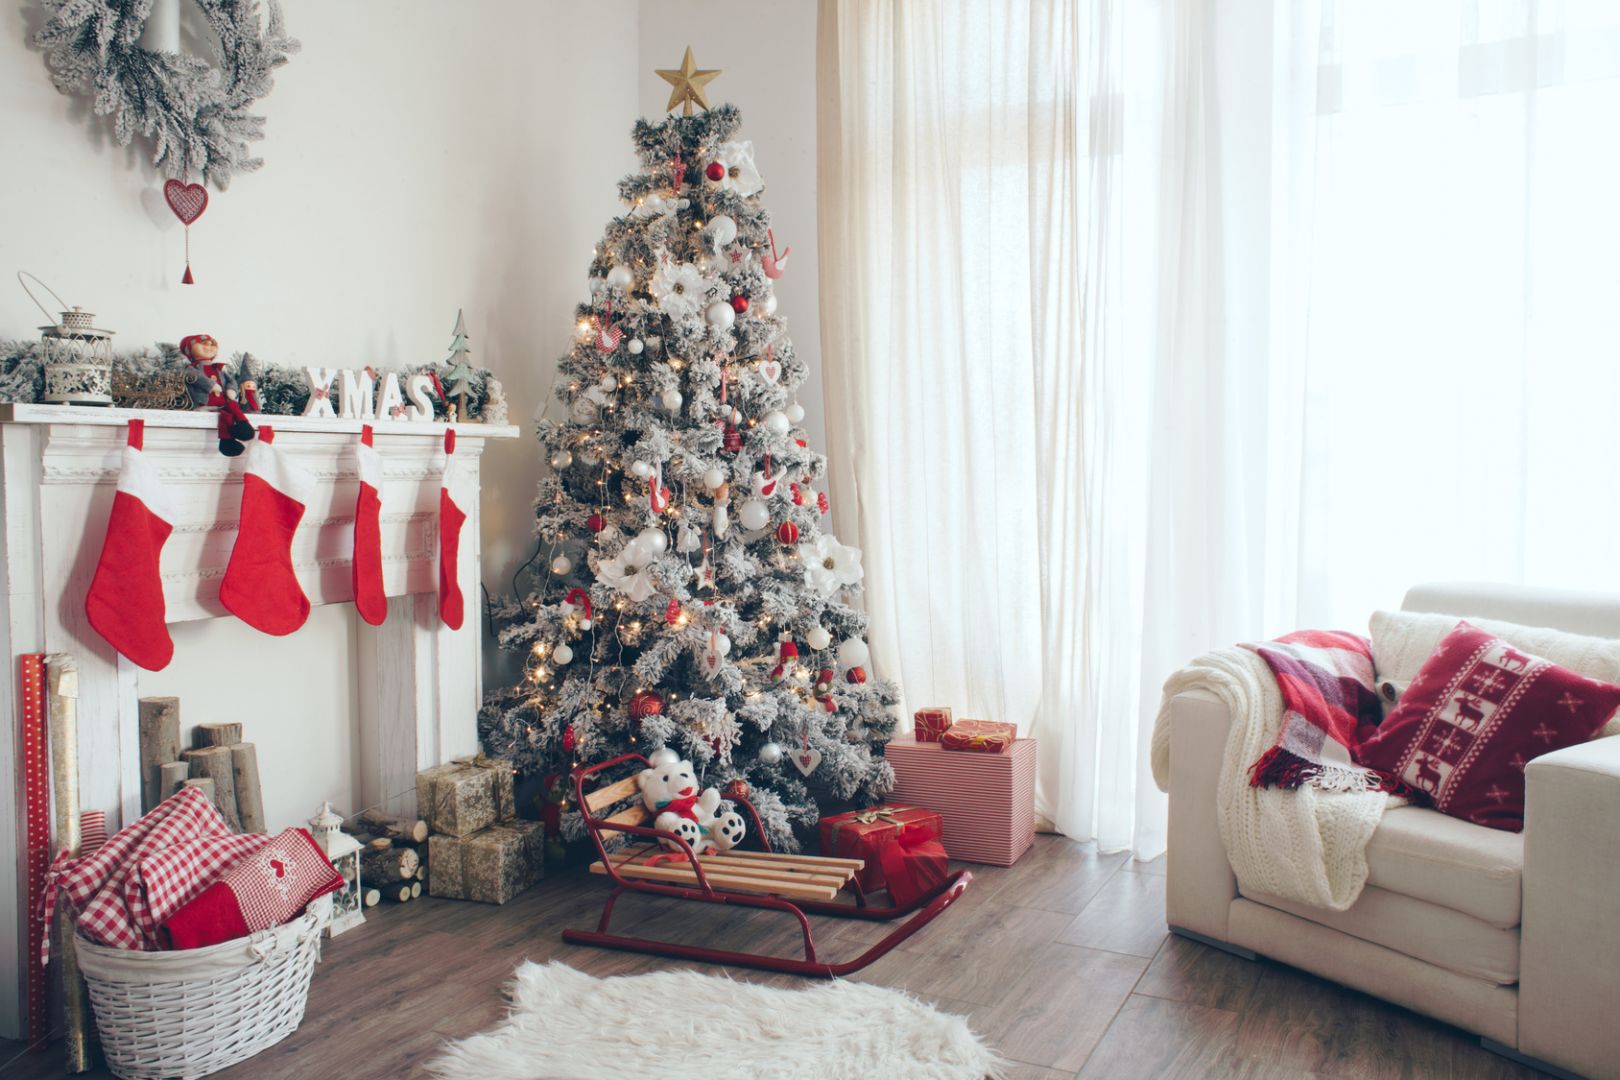 Święta Bożego Narodzenia to dobra okazja do zmiany salonu w miejsce pełne kolorów, świątecznych dekoracji i ozdób. Fot. Bondex 